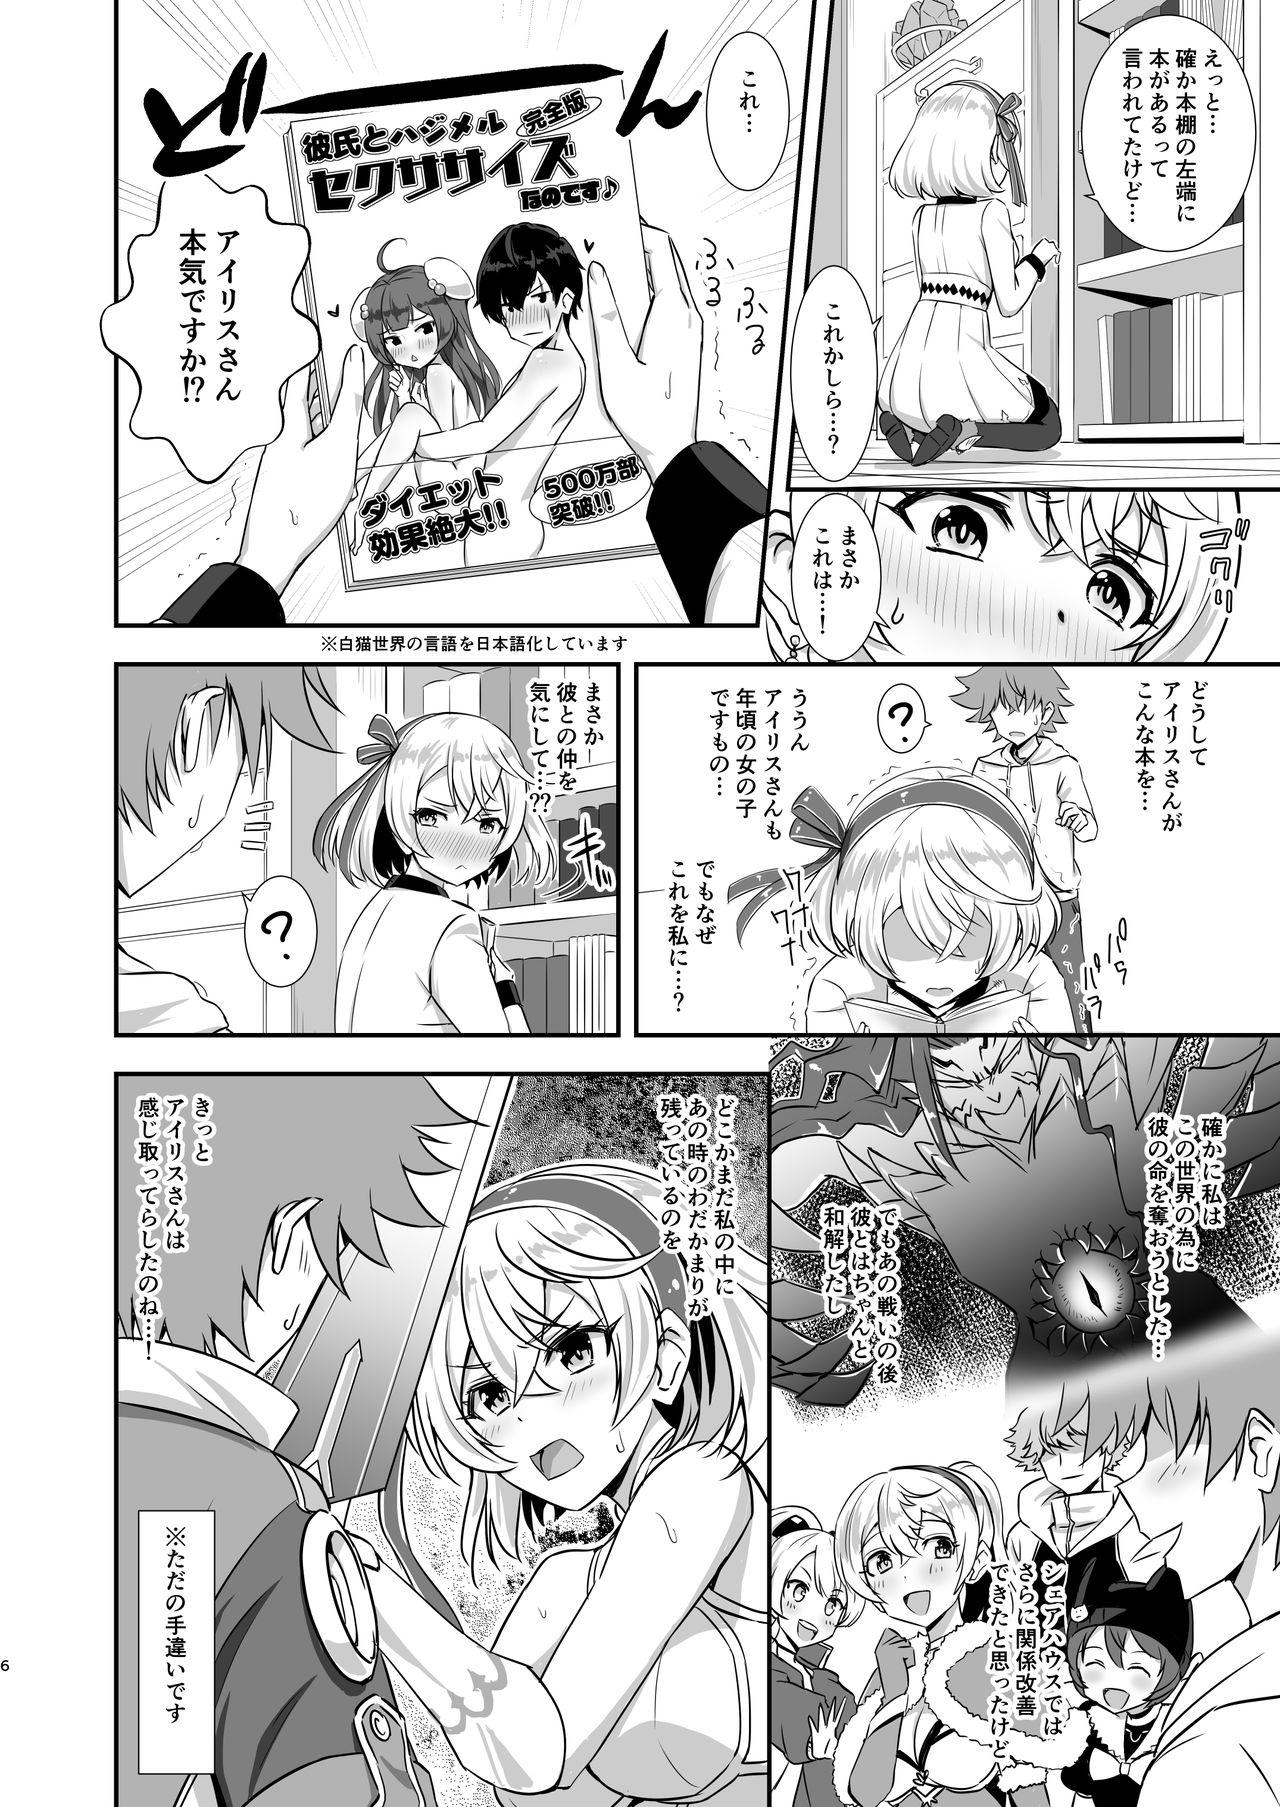 Double Erenoa to seiya no sekusasaizu - Shironeko project Amazing - Page 5